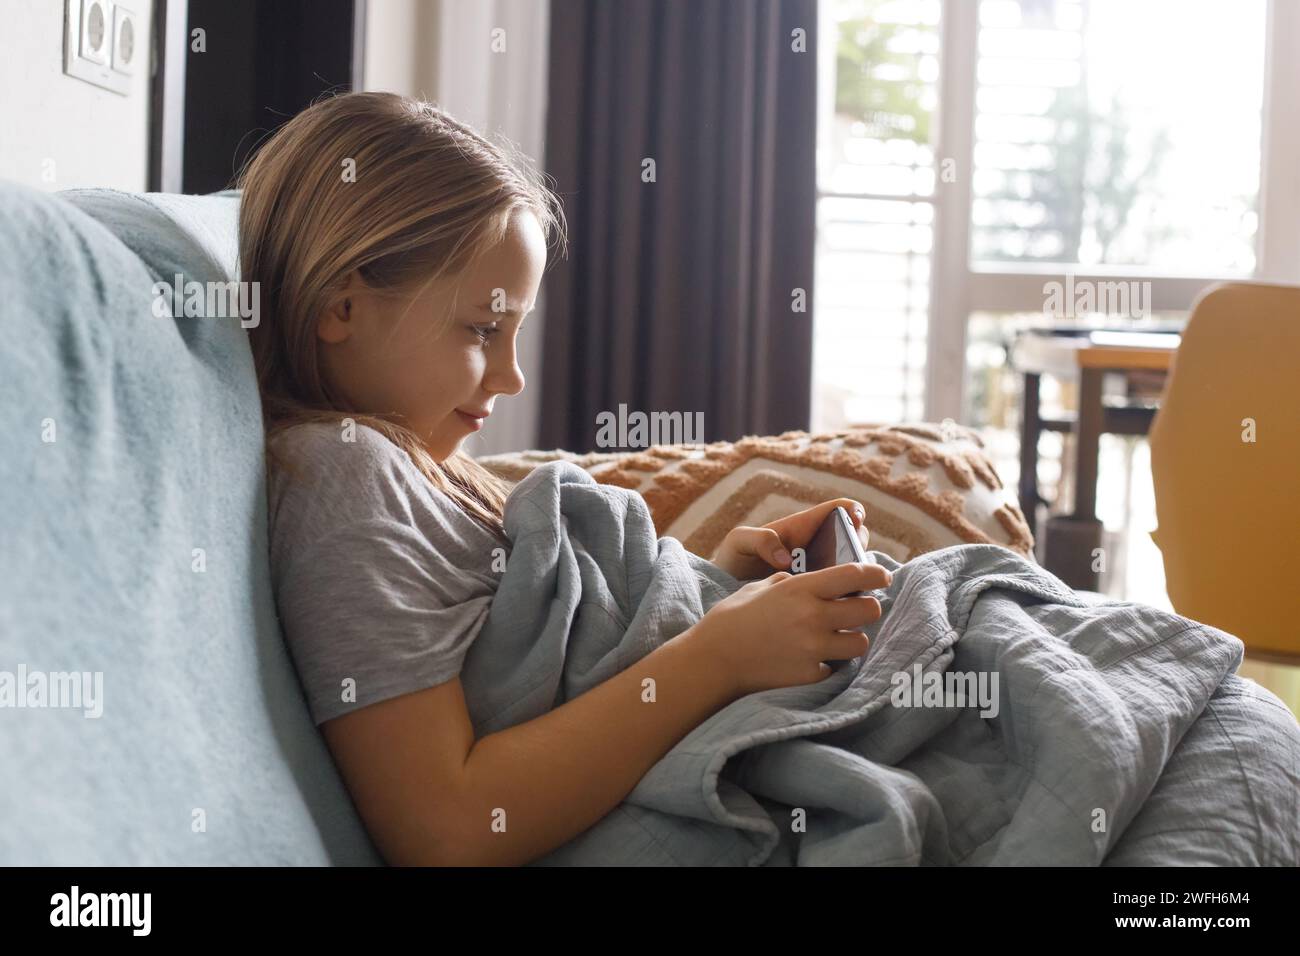 Glückliches Mädchen Kind mit Smartphone, das Videos ansieht oder zu Hause spielt. Freizeit, Kinder, Technik, Internetkommunikation und Menschenkonzept. Stockfoto